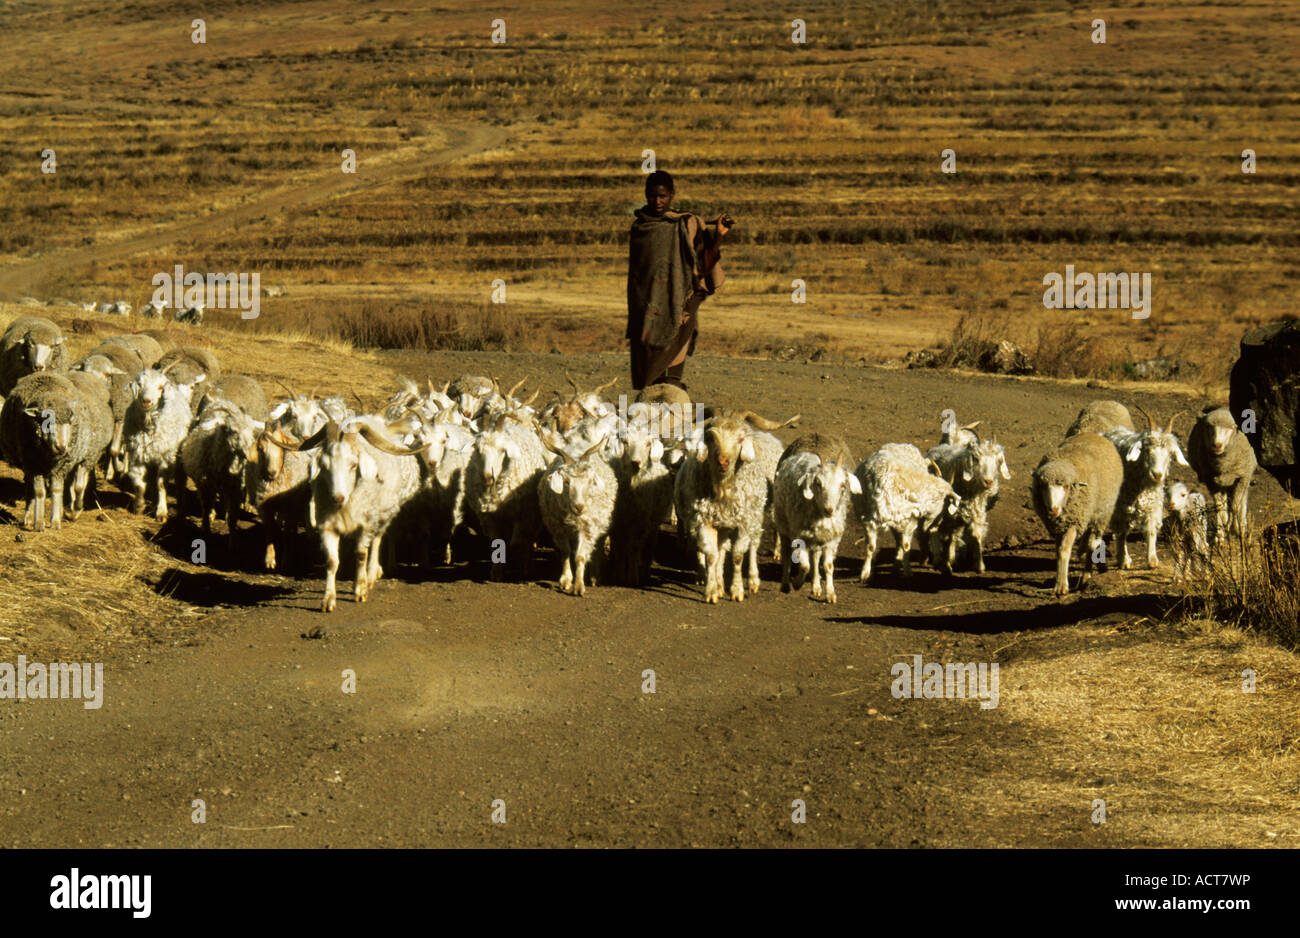 Vue sur la tête de berger conduisant son troupeau vers le bas une route poussiéreuse dans un environnement sec et aride au Lesotho Banque D'Images